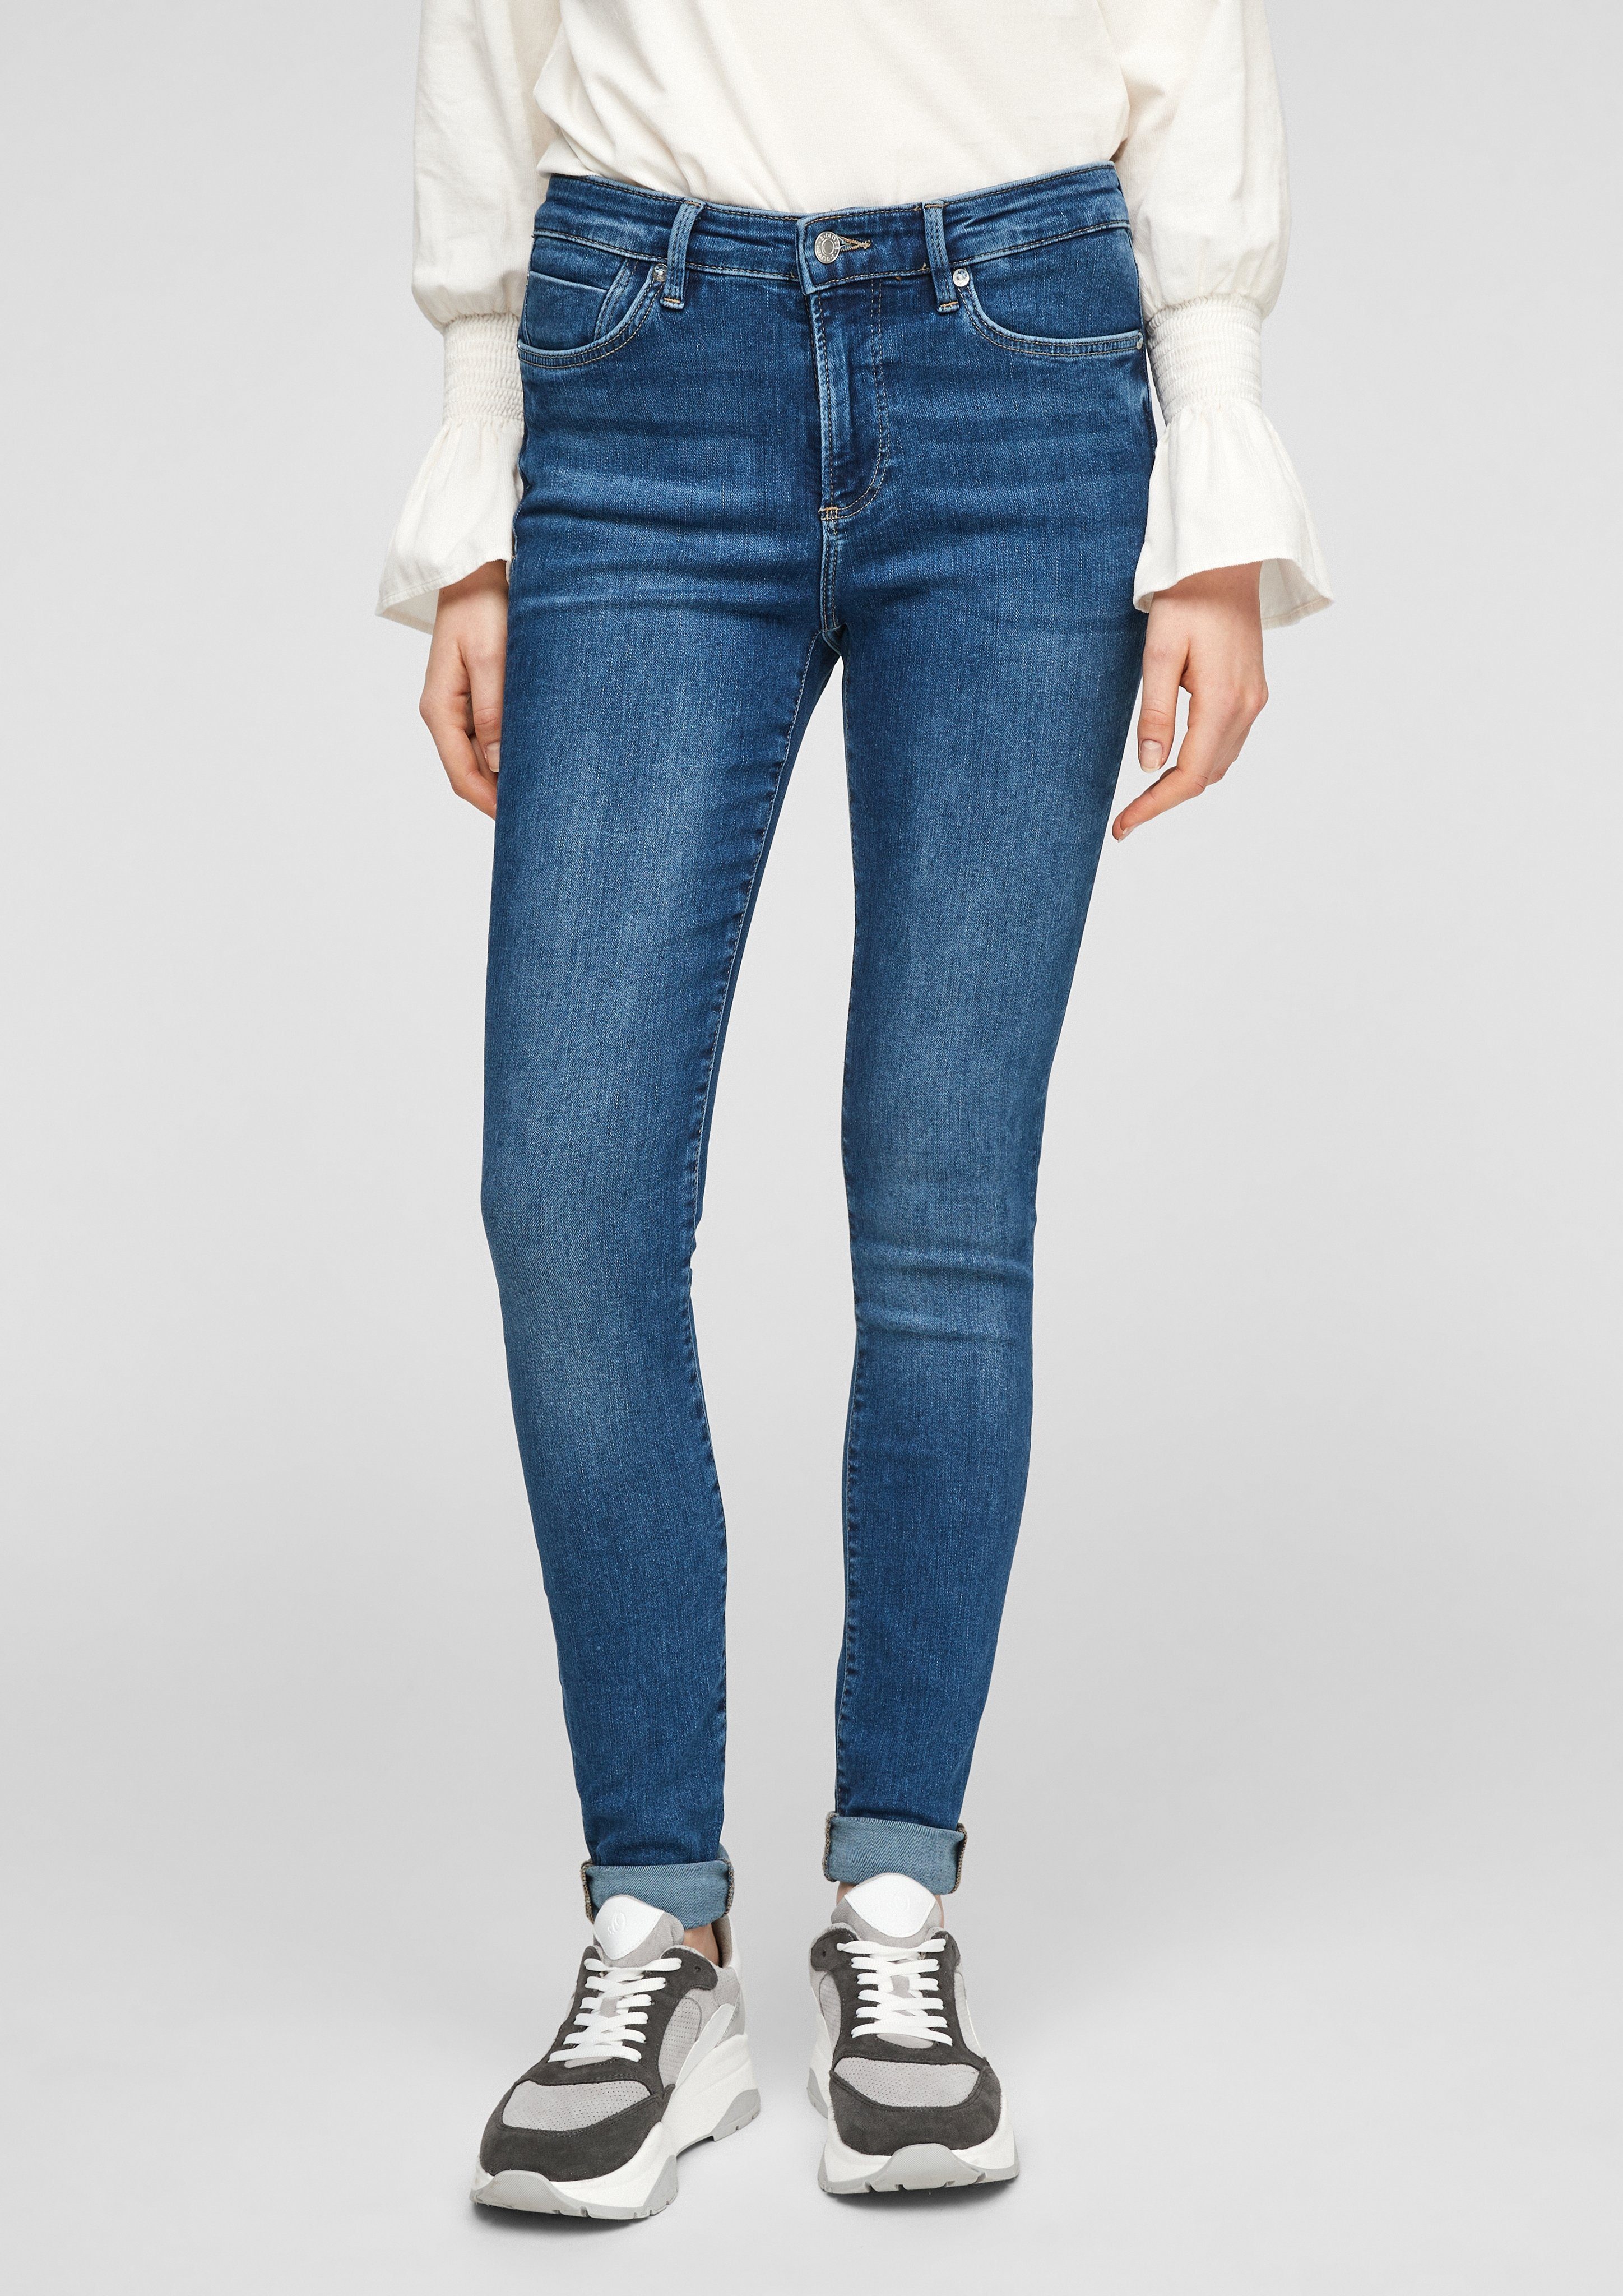 Damen Jeans online kaufen » Jeanshosen Trends 2022 | OTTO